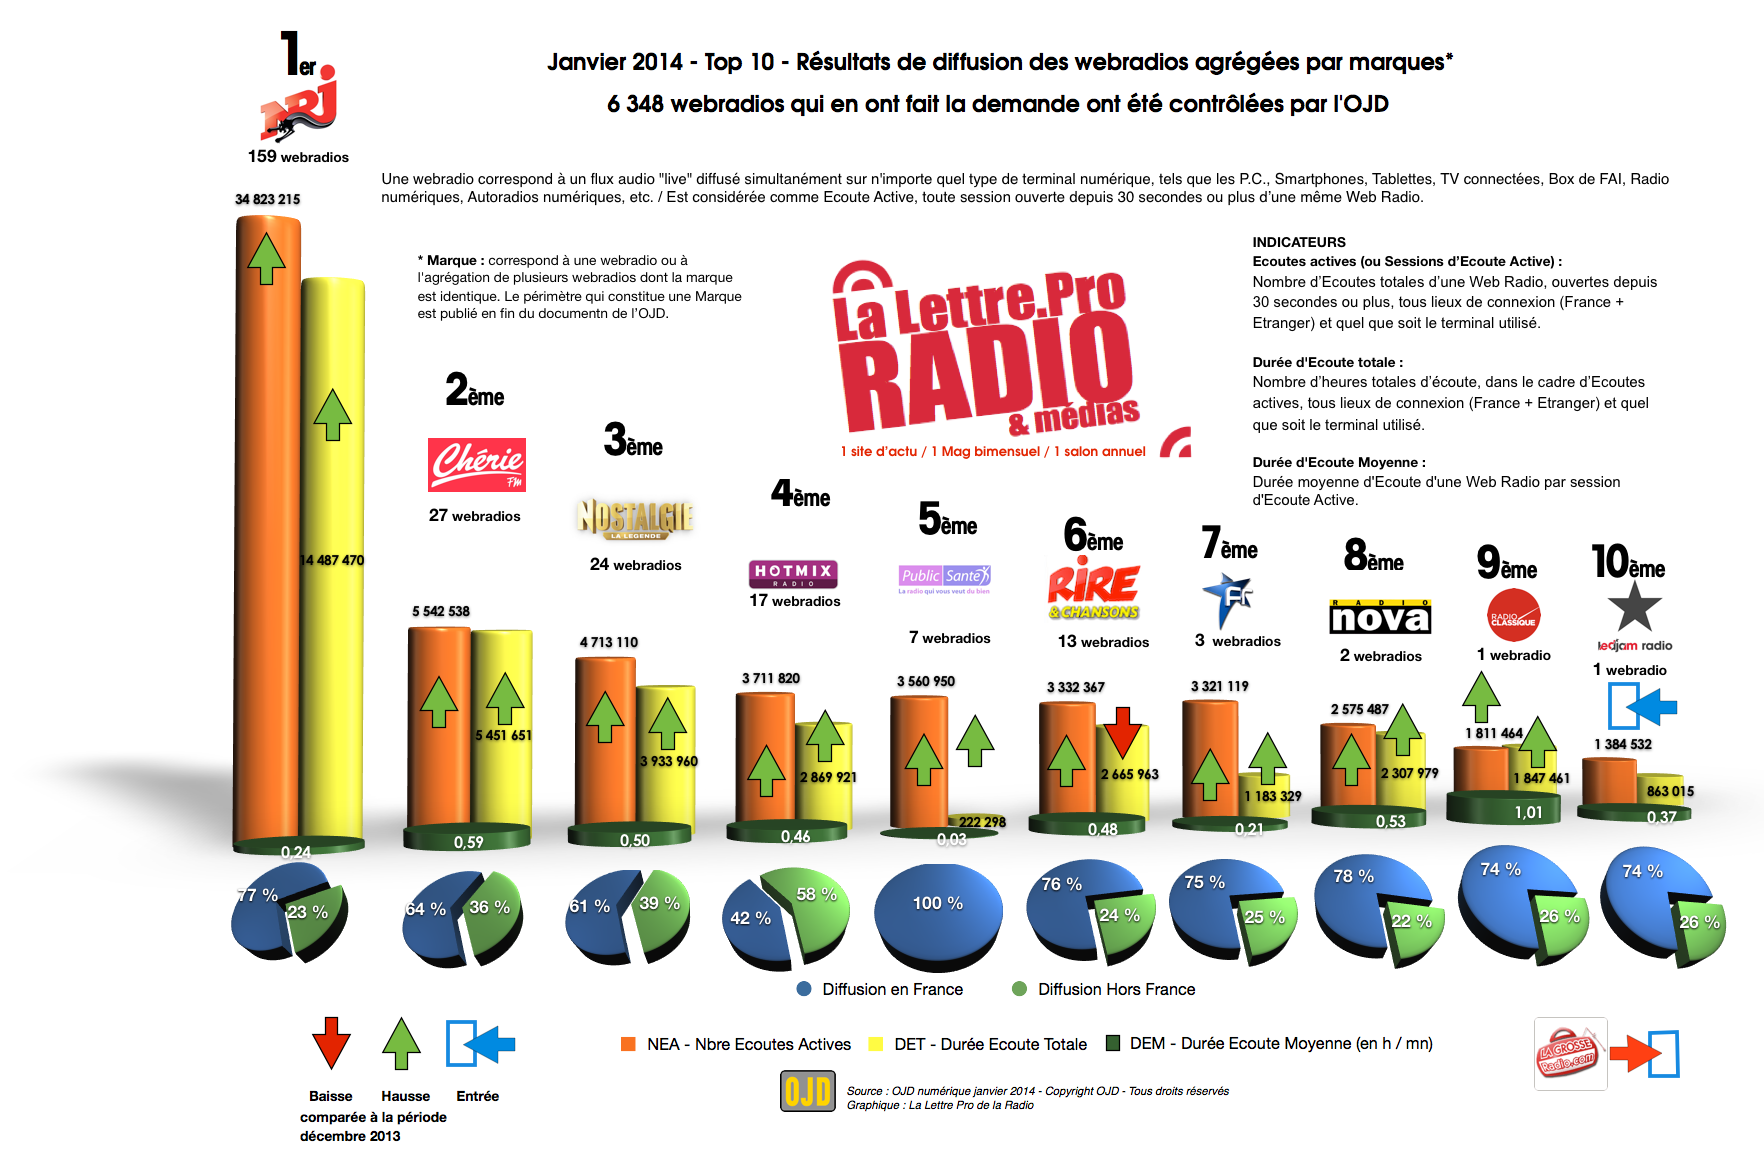 EXCLU - Top 10 OJD webradios / La Lettre Pro